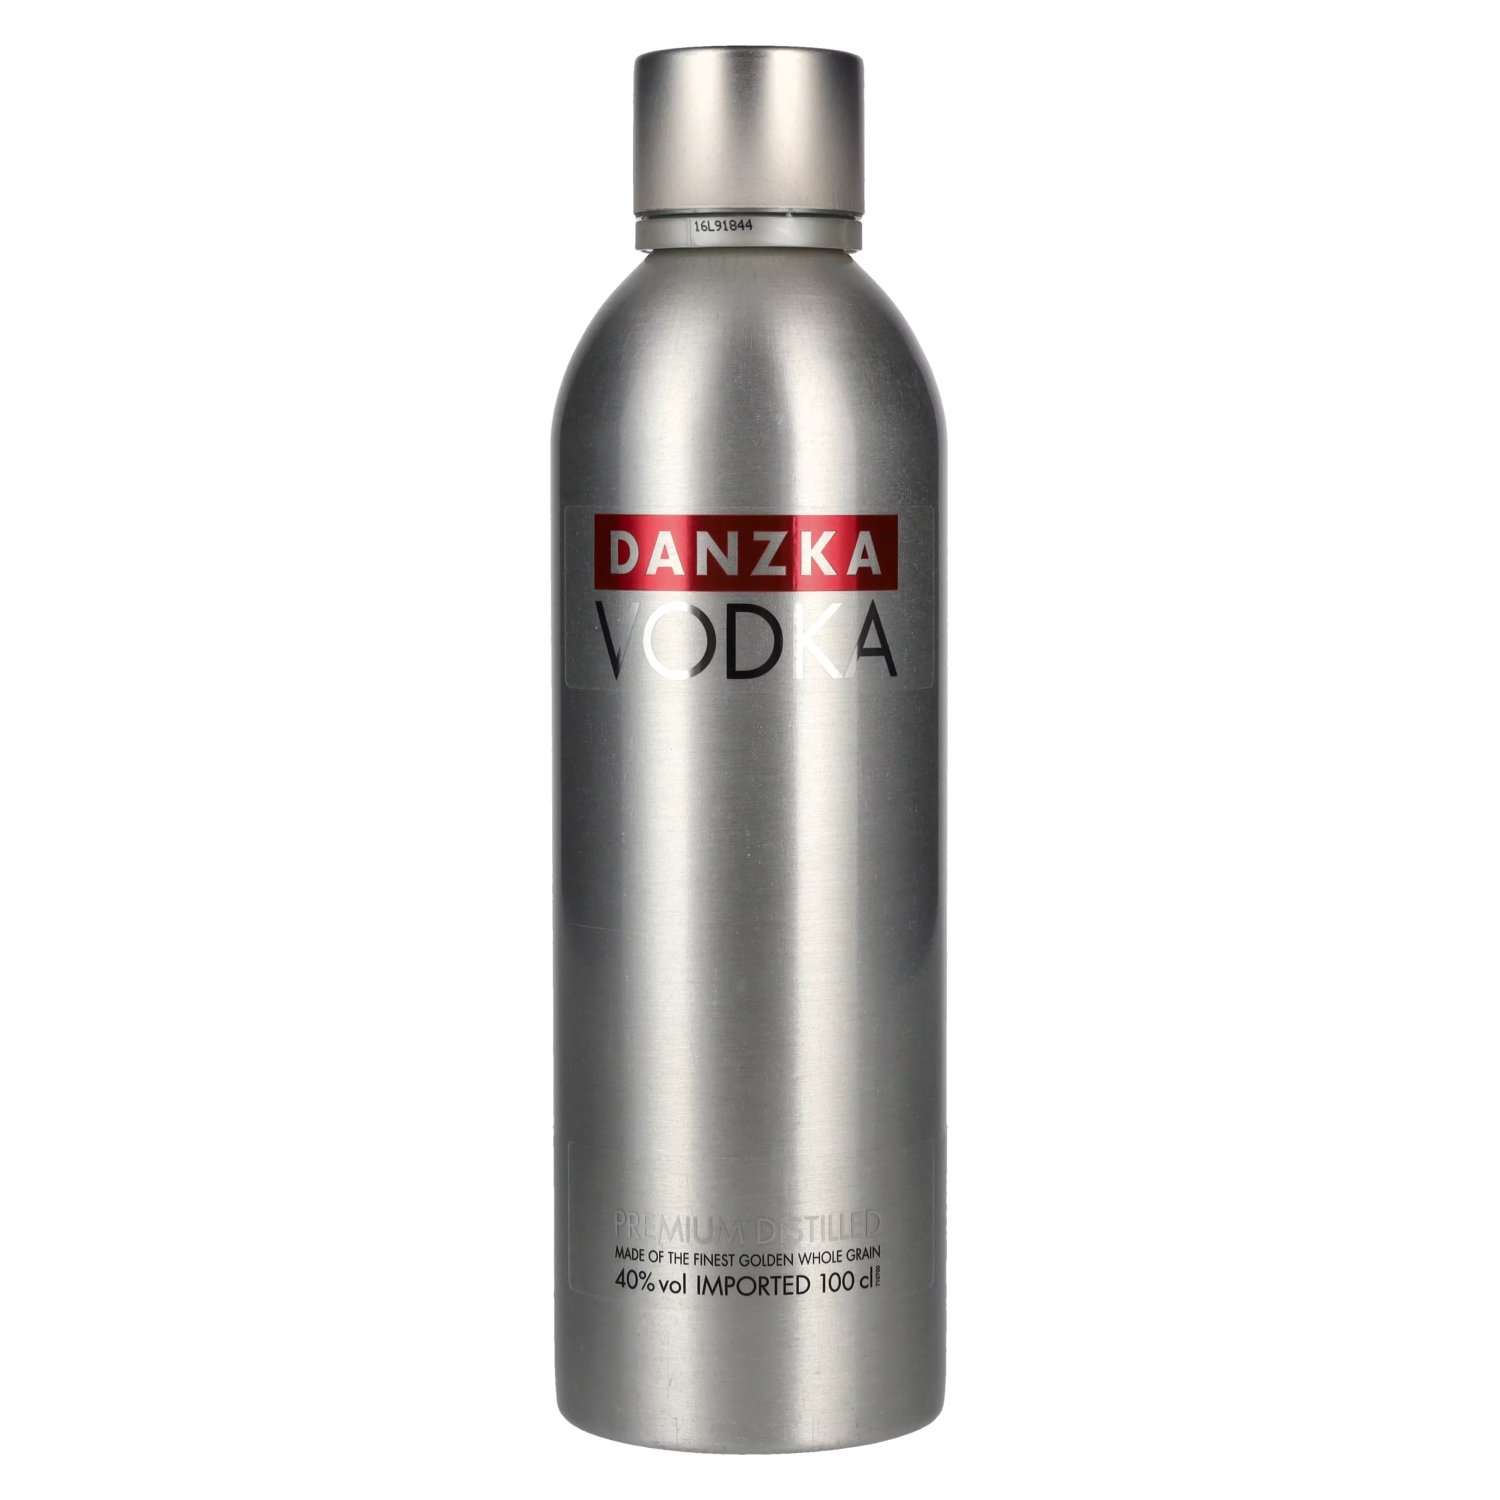 Danzka Vodka ORIGINAL Distilled 1l Premium 40% Vol